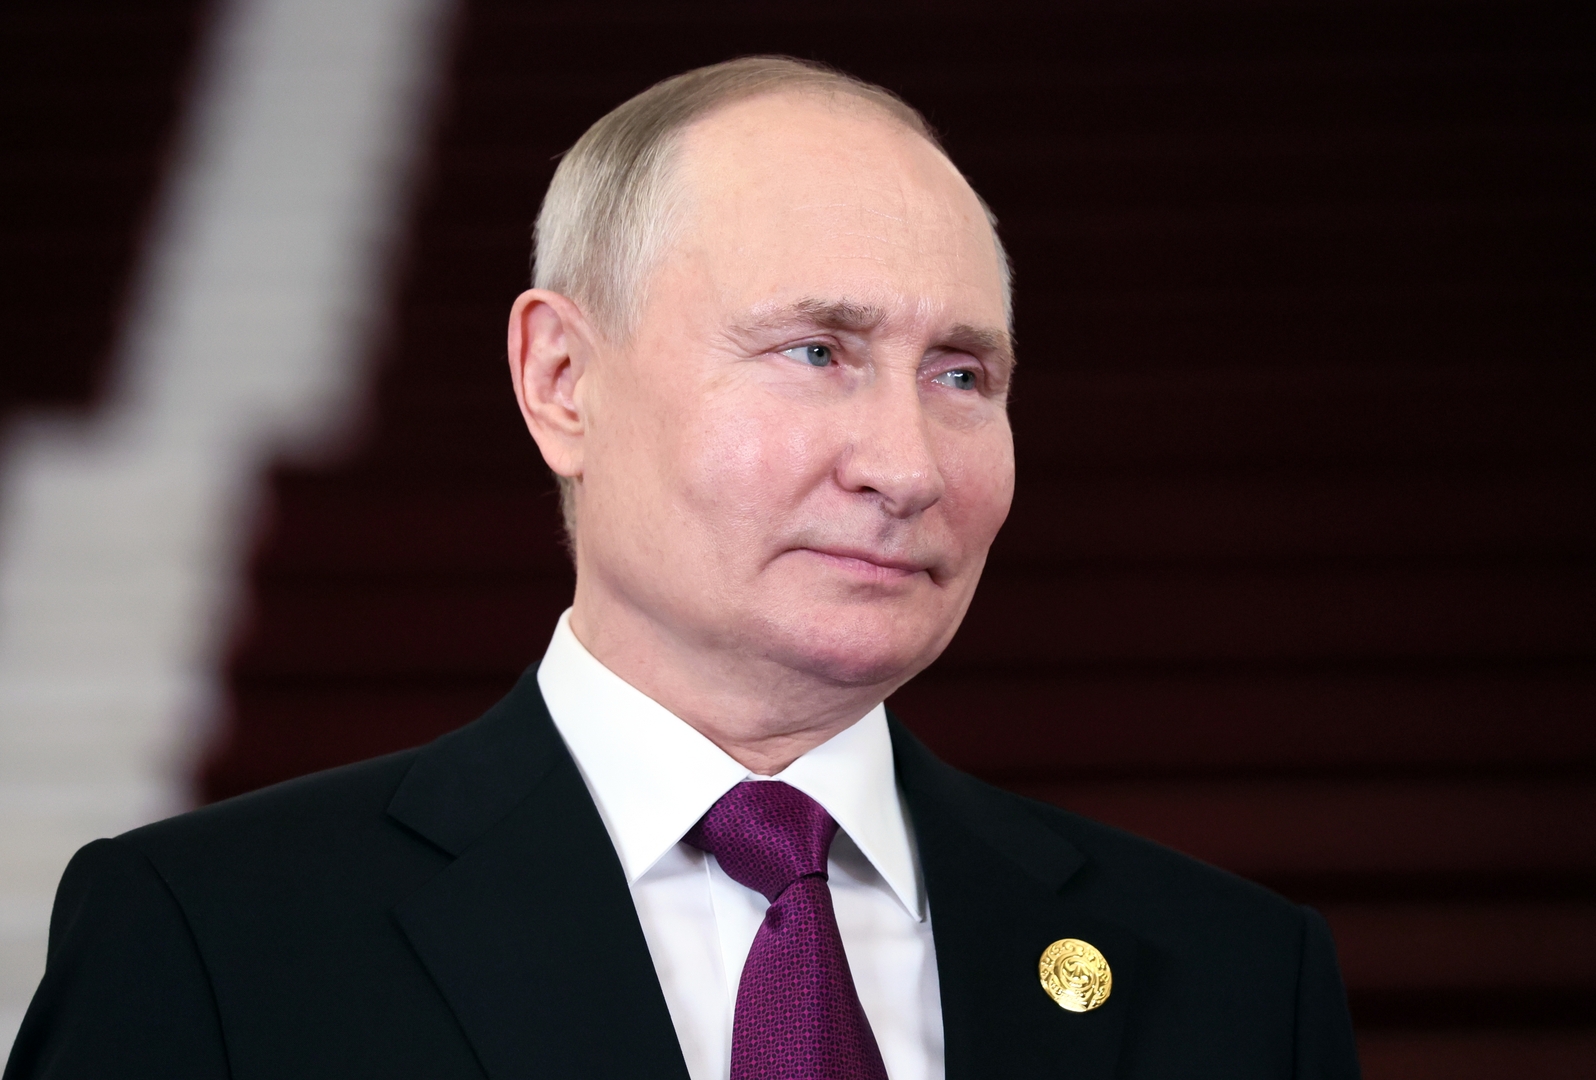 بوتين: الشراكة بين روسيا وكازاخستان مميزة وتقوم على مبادئ الاحترام المتبادل